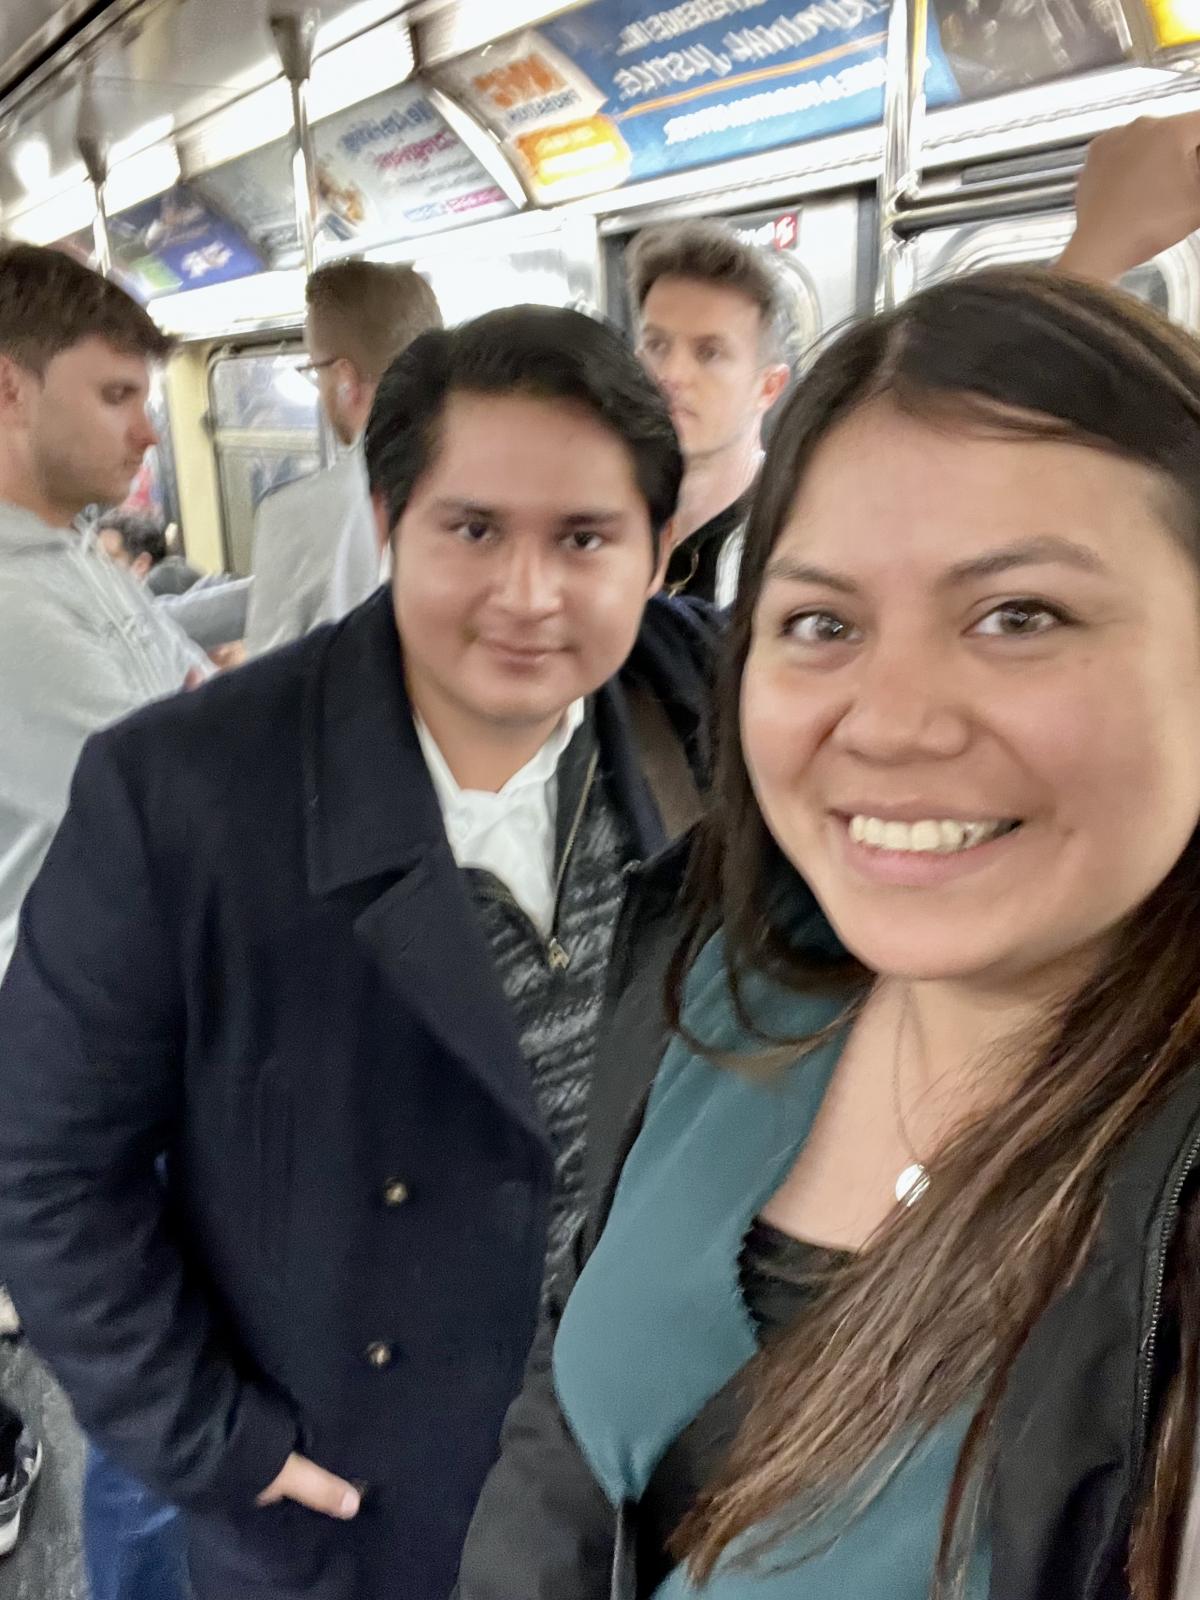 NYU Luigi Idrovo Auquillo MS 20 and Natalie Reyes in subway